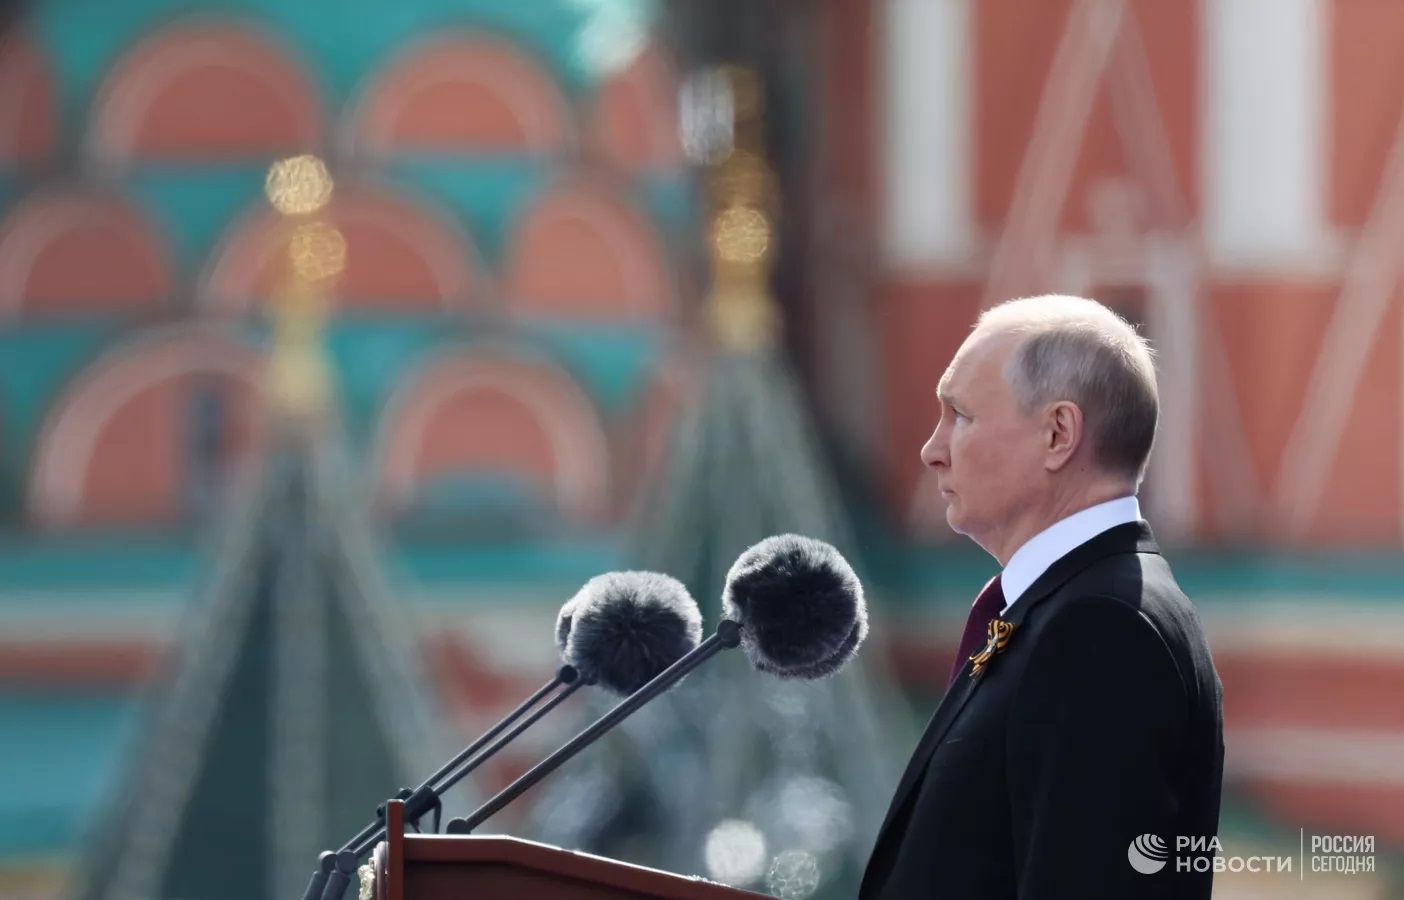 Говорит правду. Британцы пришли в восторг от речи Путина на параде Победы